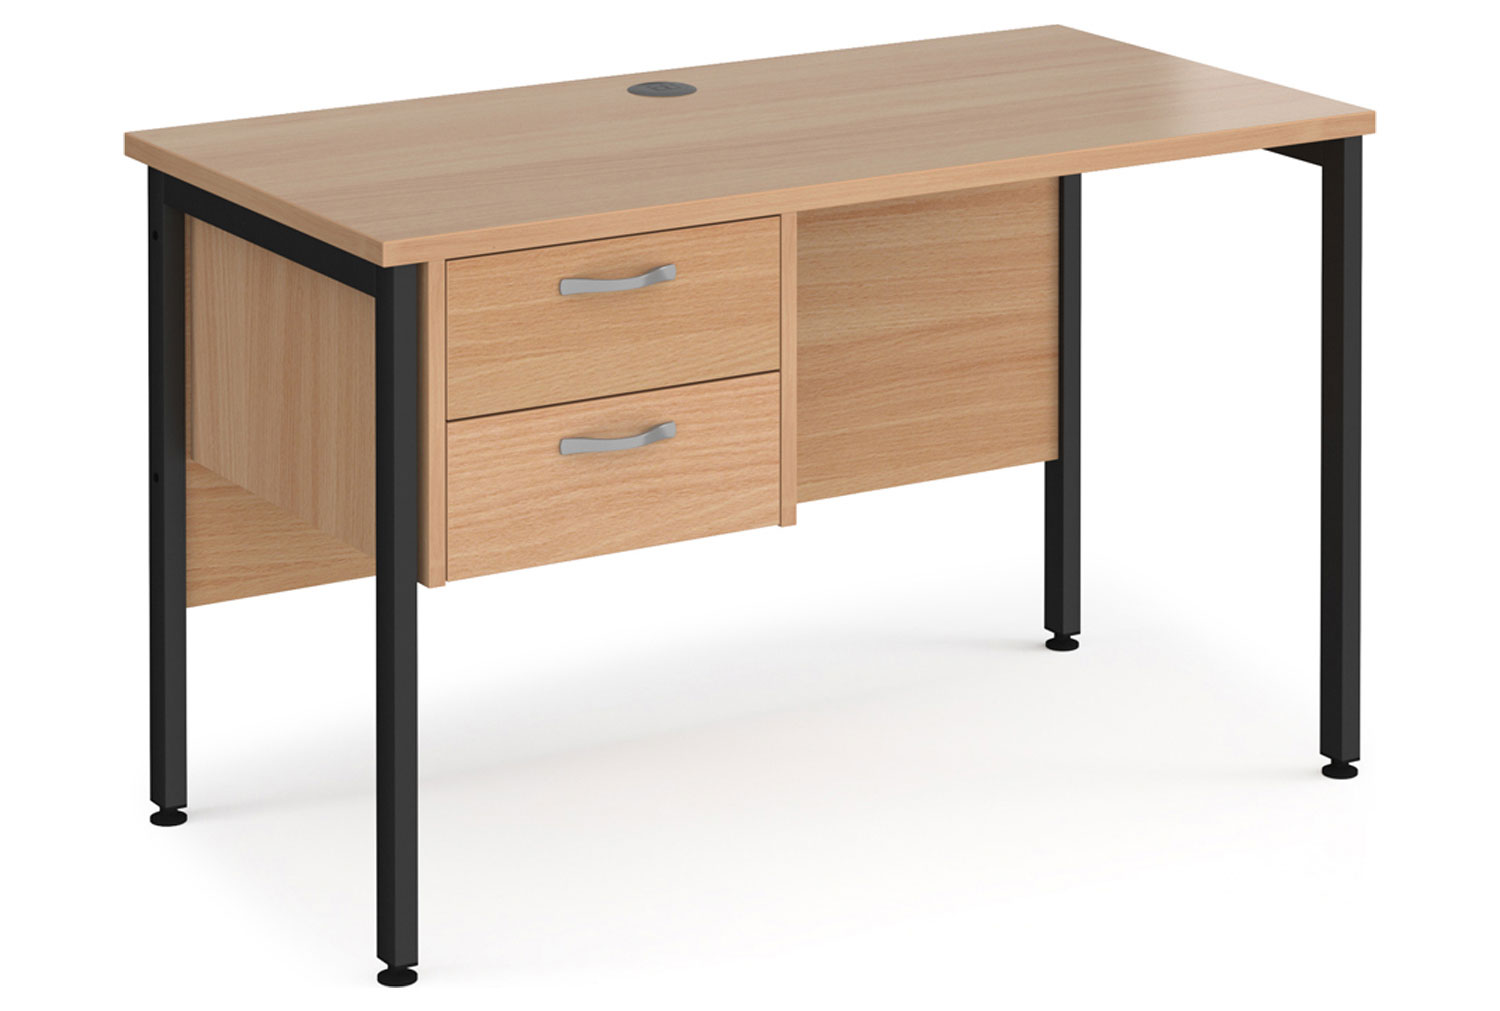 Value Line Deluxe H-Leg Narrow Rectangular Office Desk 2 Drawers (Black Legs), 120w60dx73h (cm), Beech, Fully Installed